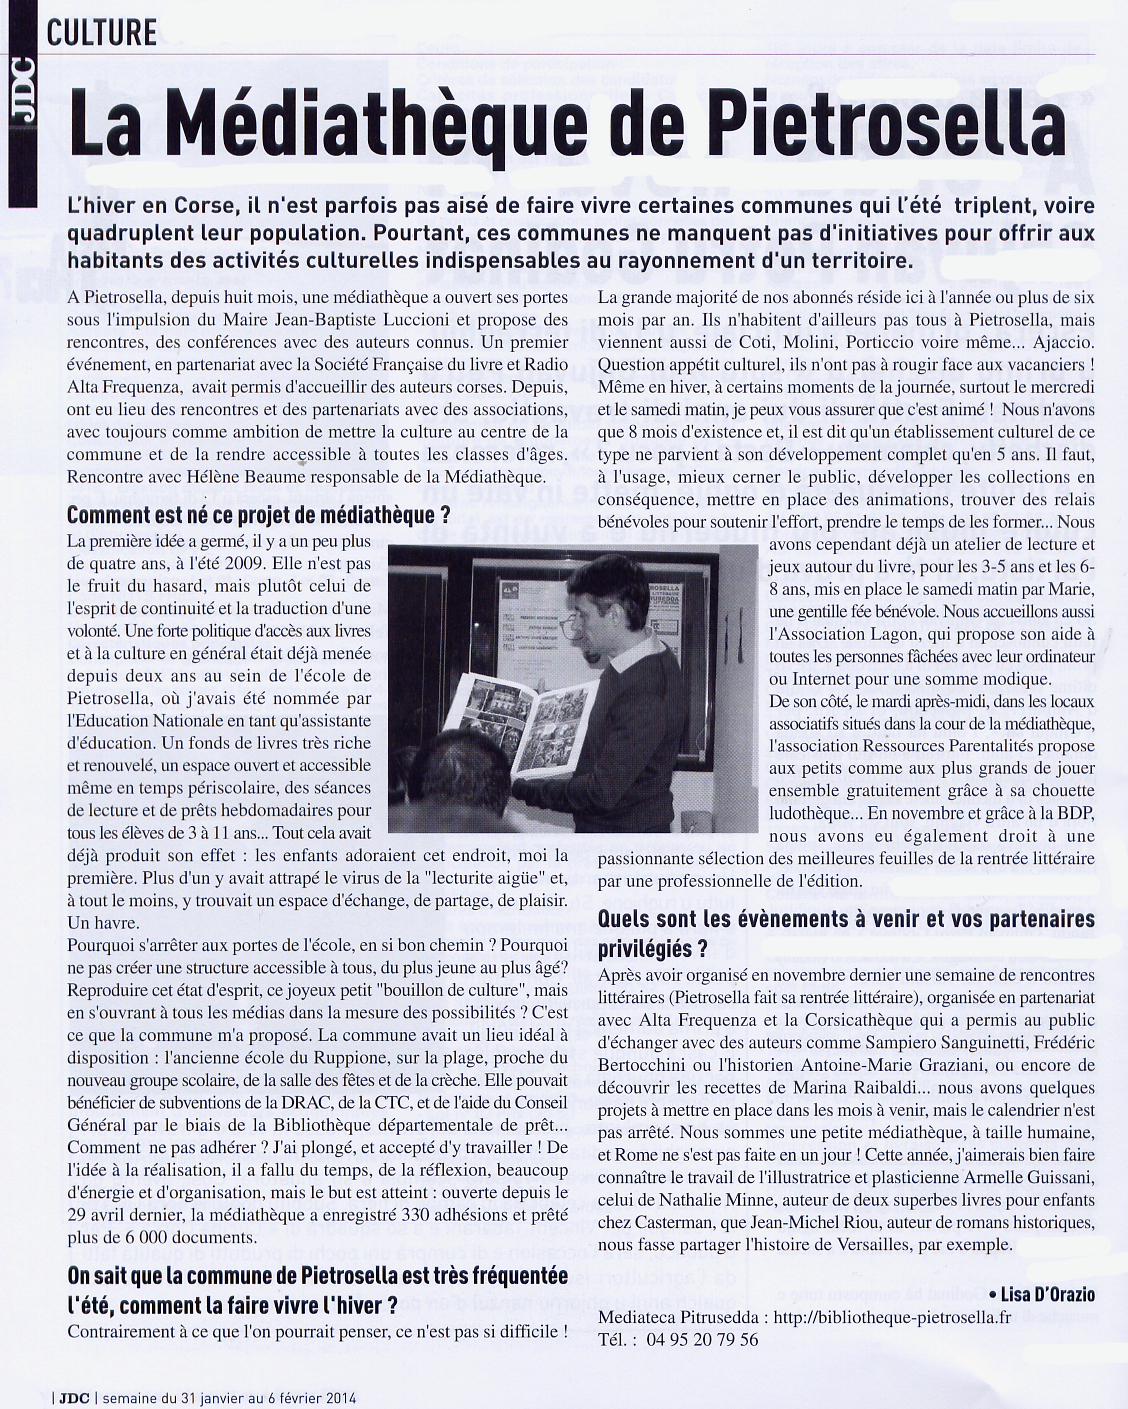 31/01/2014 - Journal de la Corse